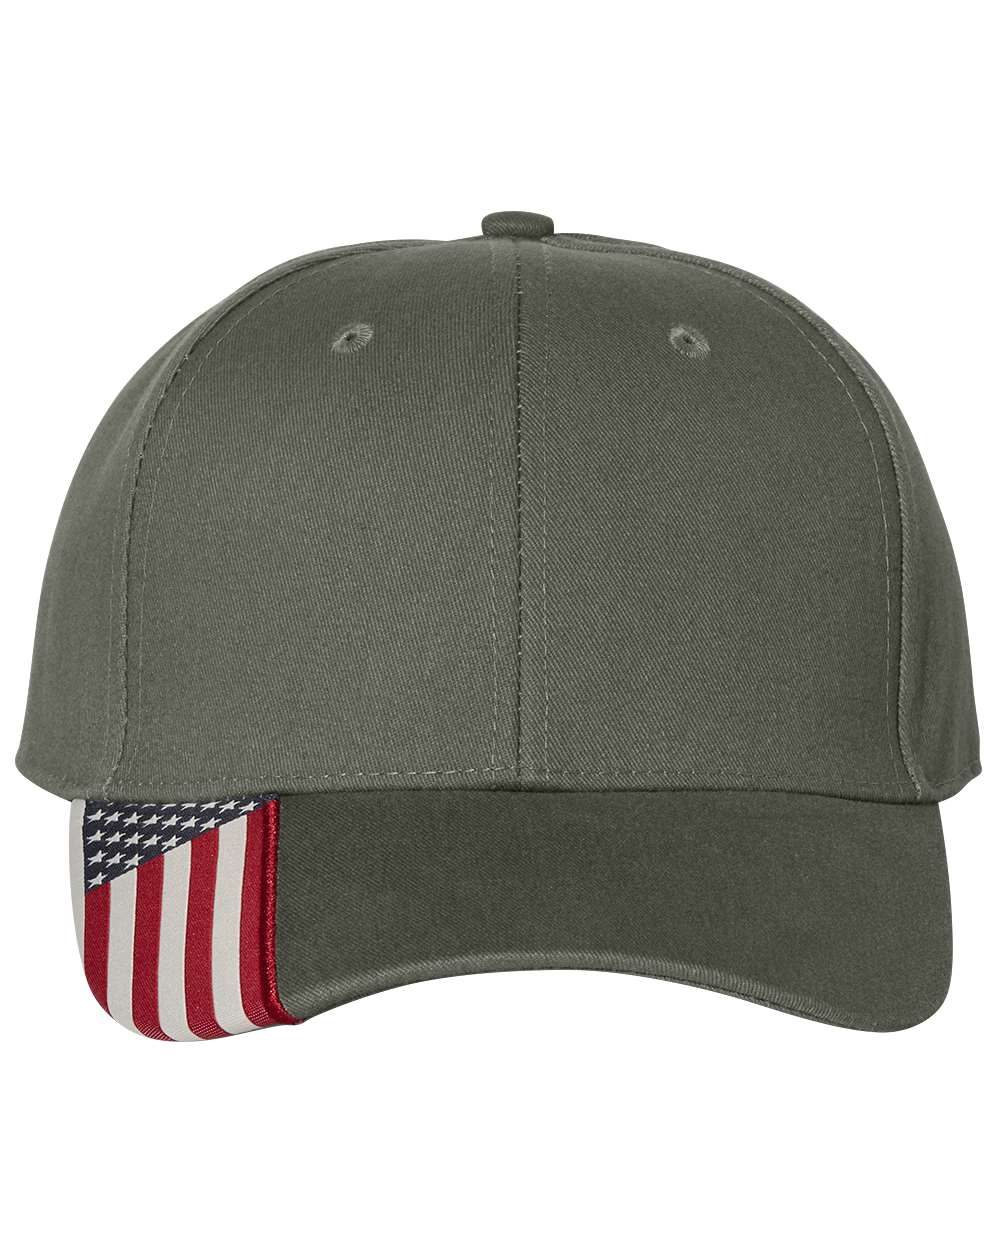 Outdoor Cap USA300 - American Flag Cap